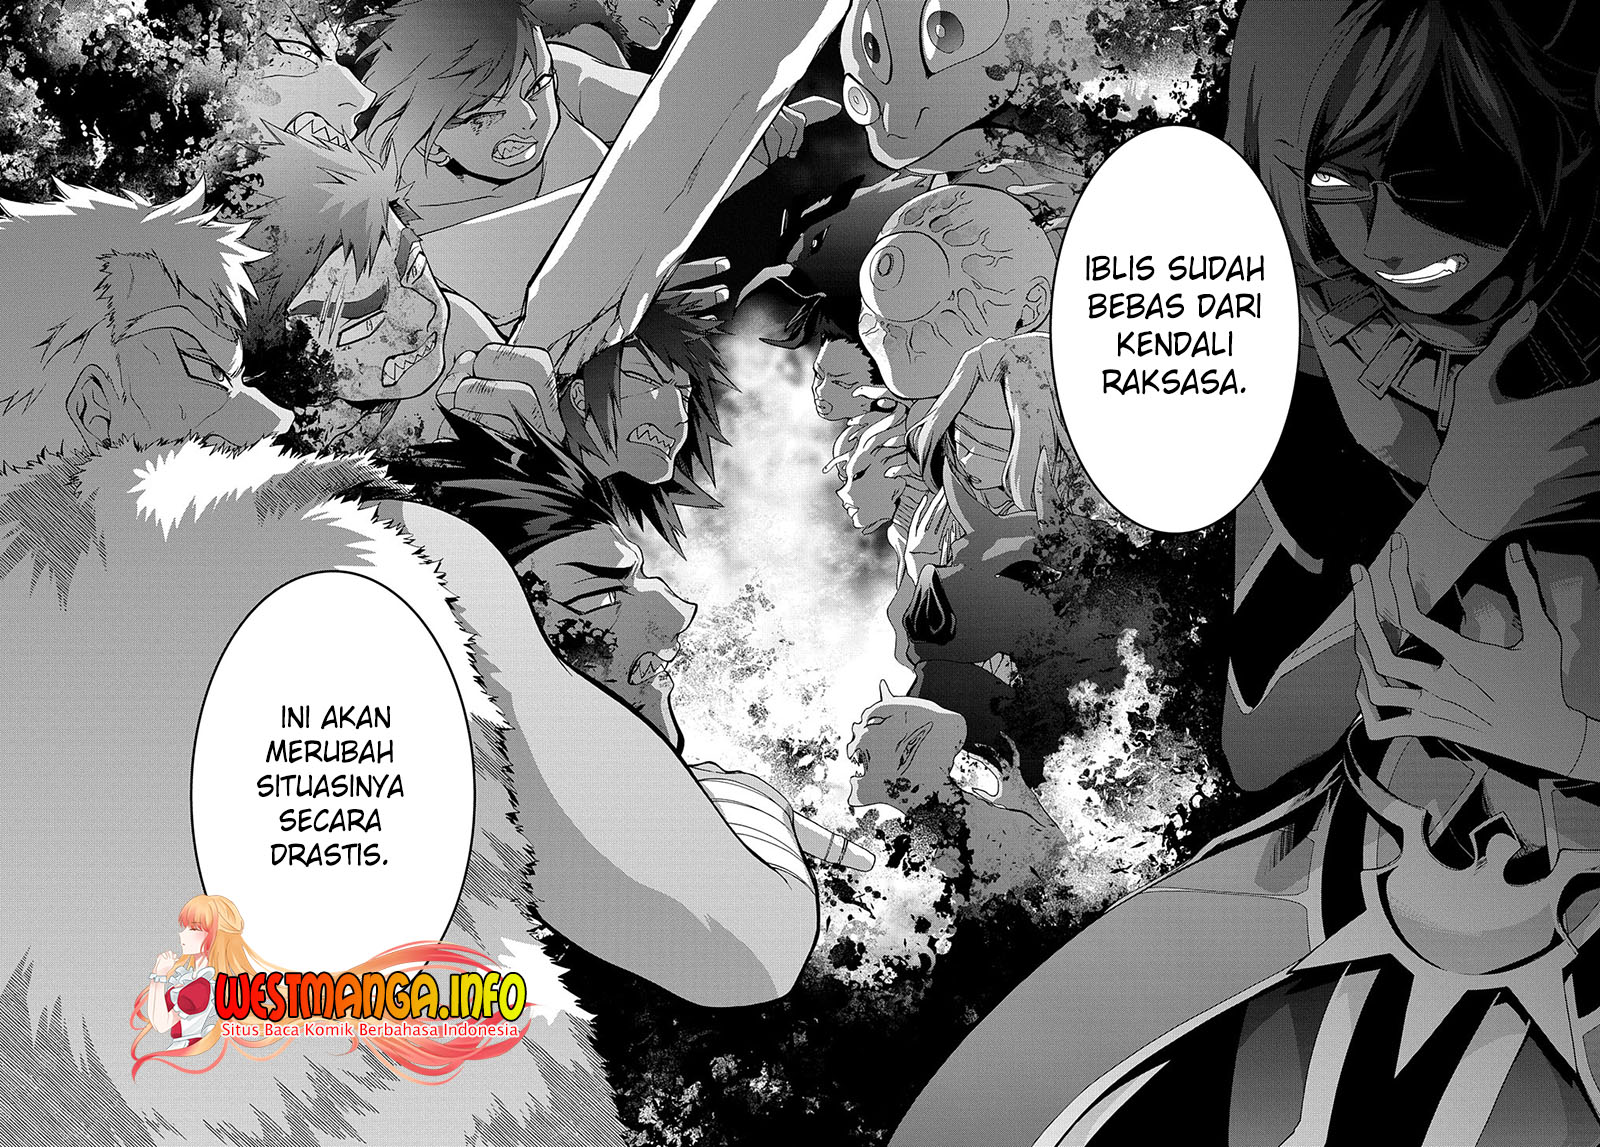 Garbage Brave: Isekai ni Shoukan Sare Suterareta Yuusha no Fukushuu Monogatari Chapter 36